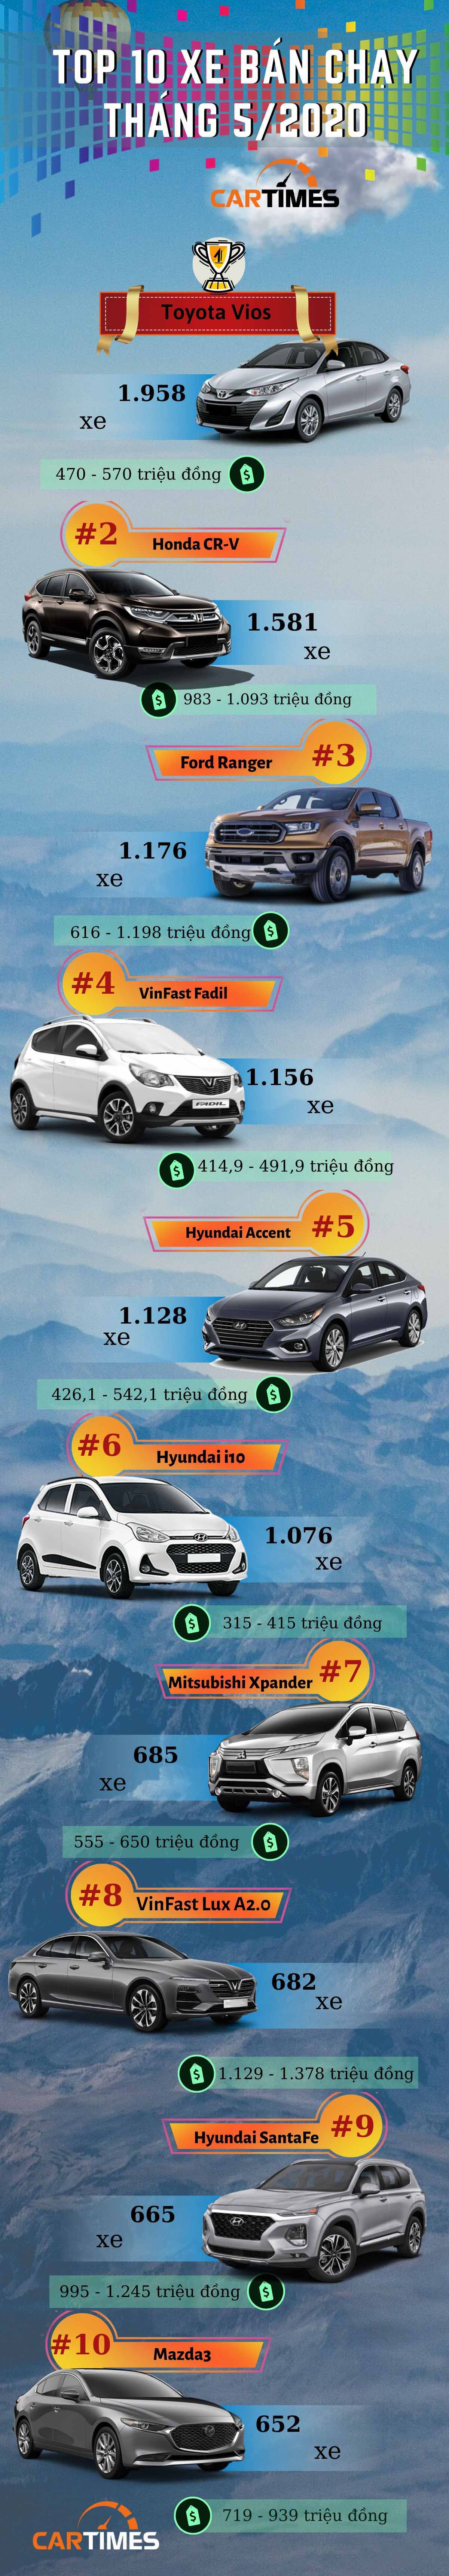 Infographic: Top 10 xe ô tô bán chạy nhất thị trường Việt Nam tháng 5/2020